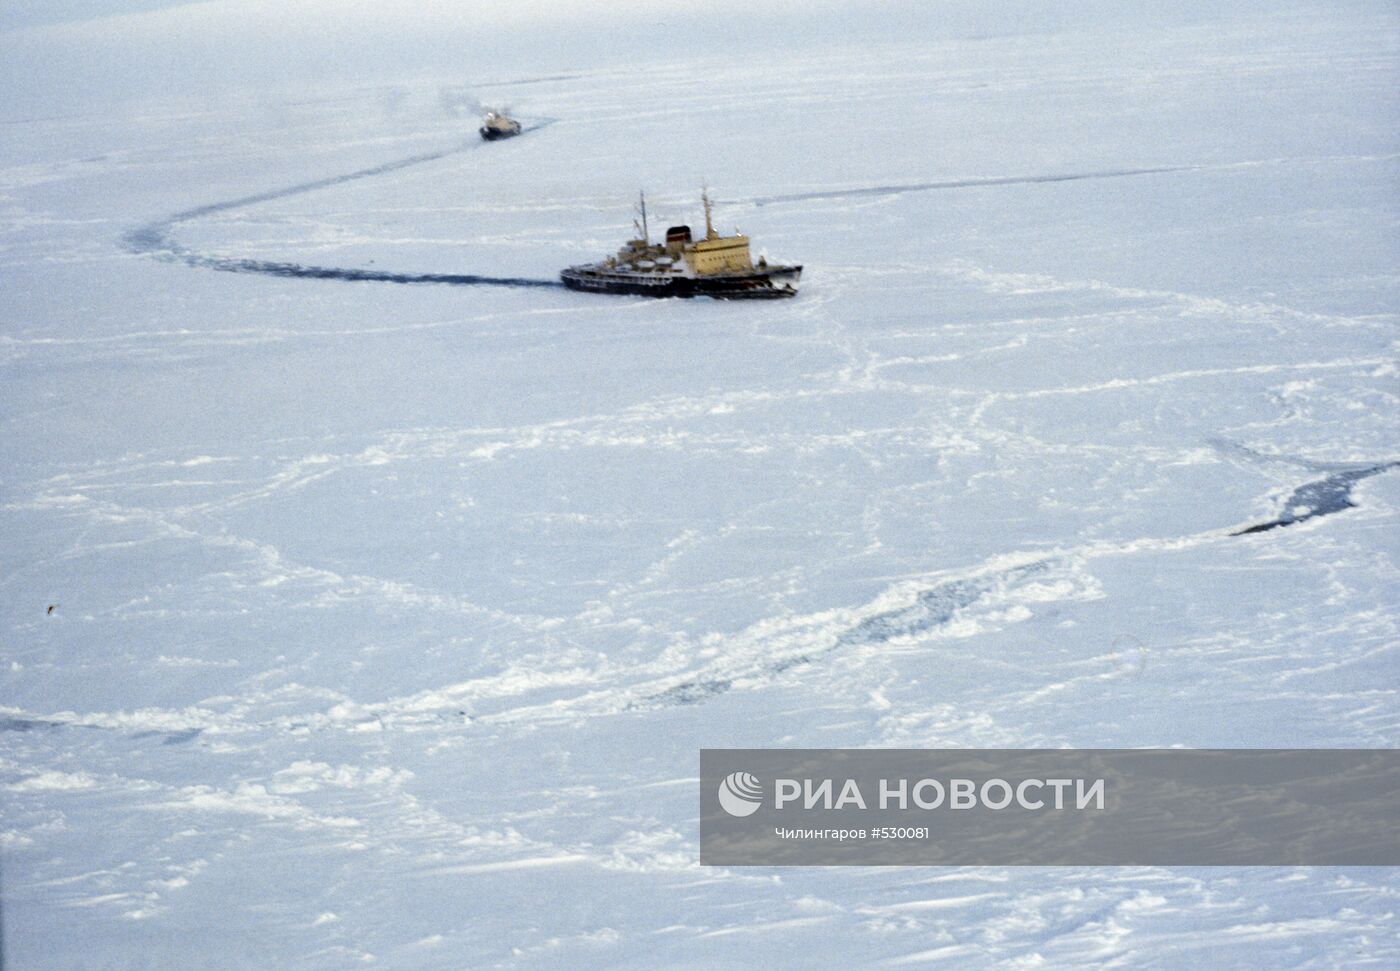 Ледокол "Владивосток" и судно "Михаил Сомов"